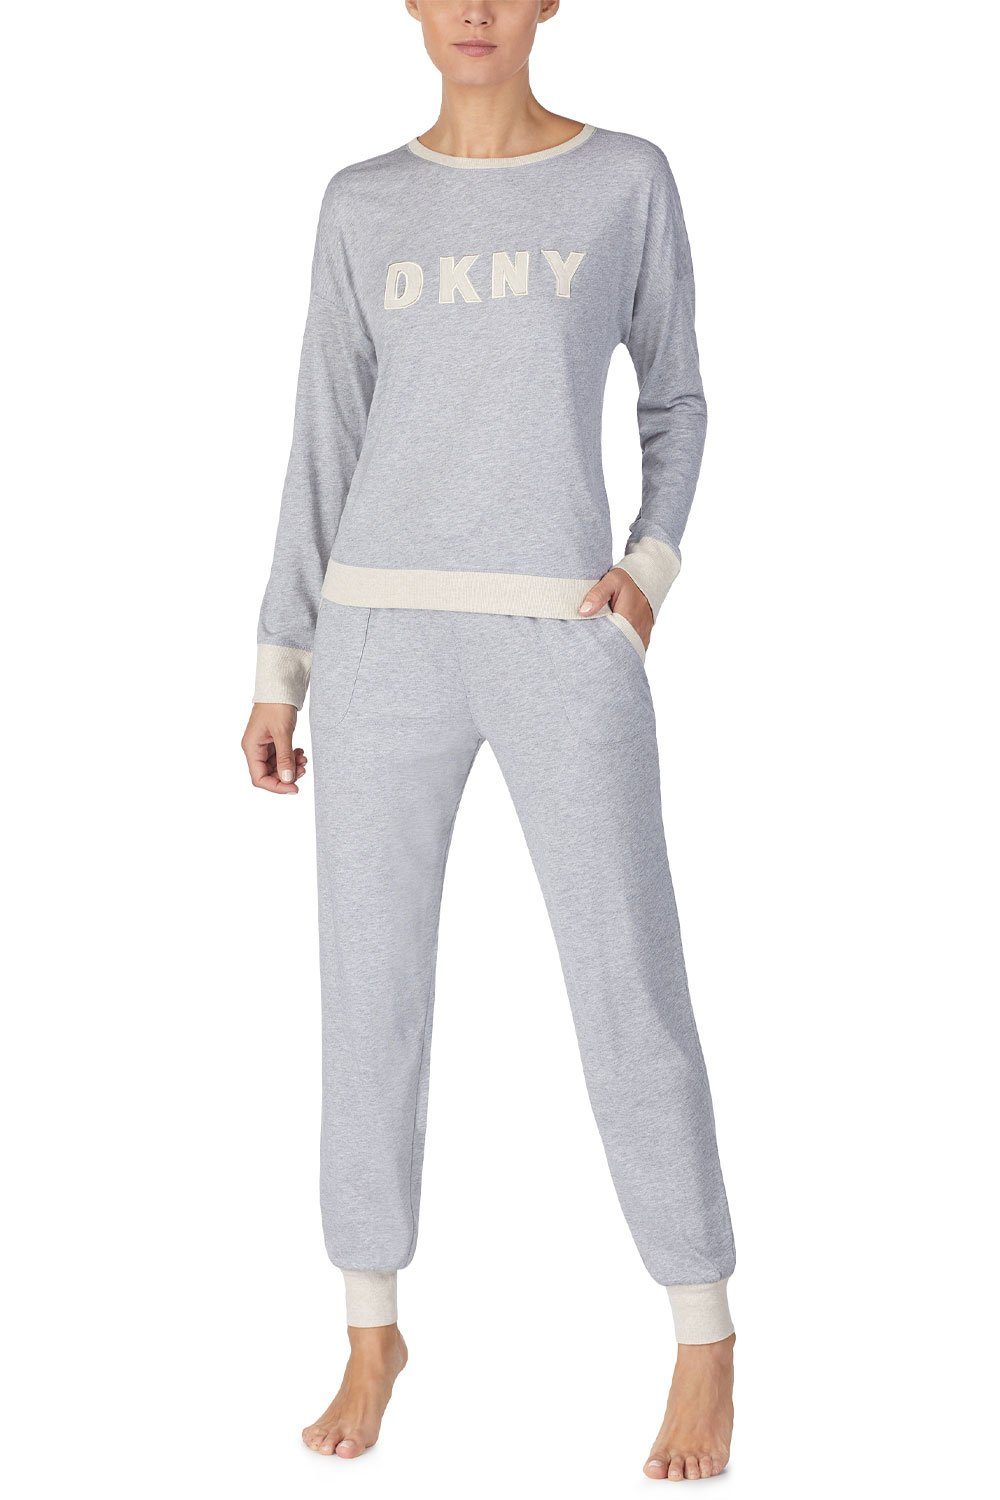 DKNY Pyjama Top YI2919259 Set Jogger grey &